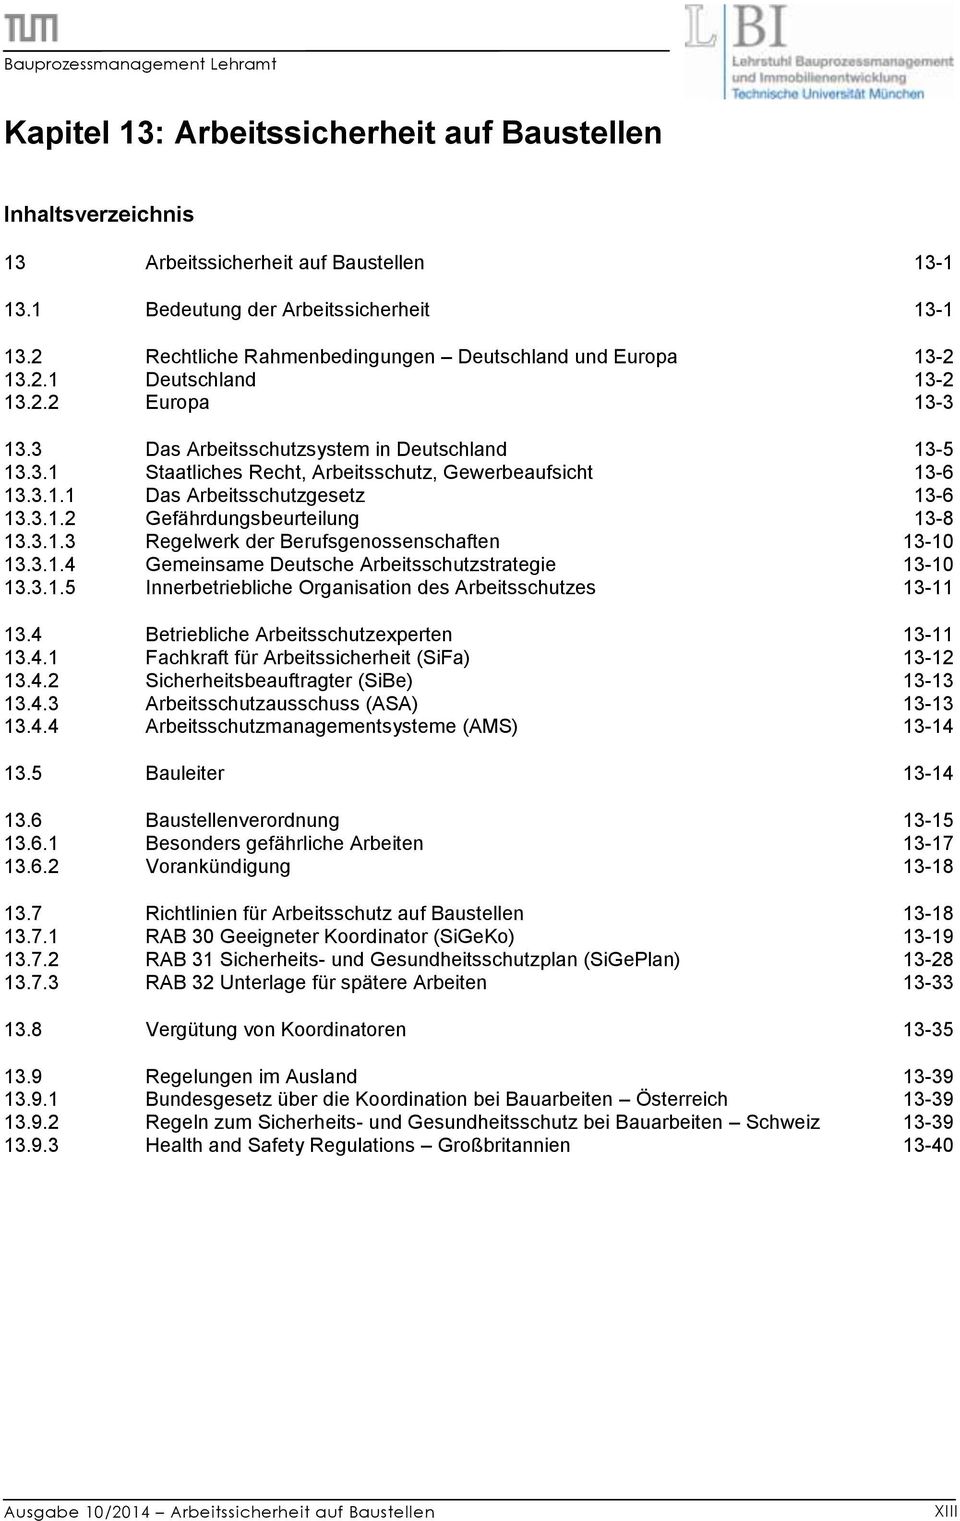 3.1.3 Regelwerk der Berufsgenossenschaften 13-10 13.3.1.4 Gemeinsame Deutsche Arbeitsschutzstrategie 13-10 13.3.1.5 Innerbetriebliche Organisation des Arbeitsschutzes 13-11 13.